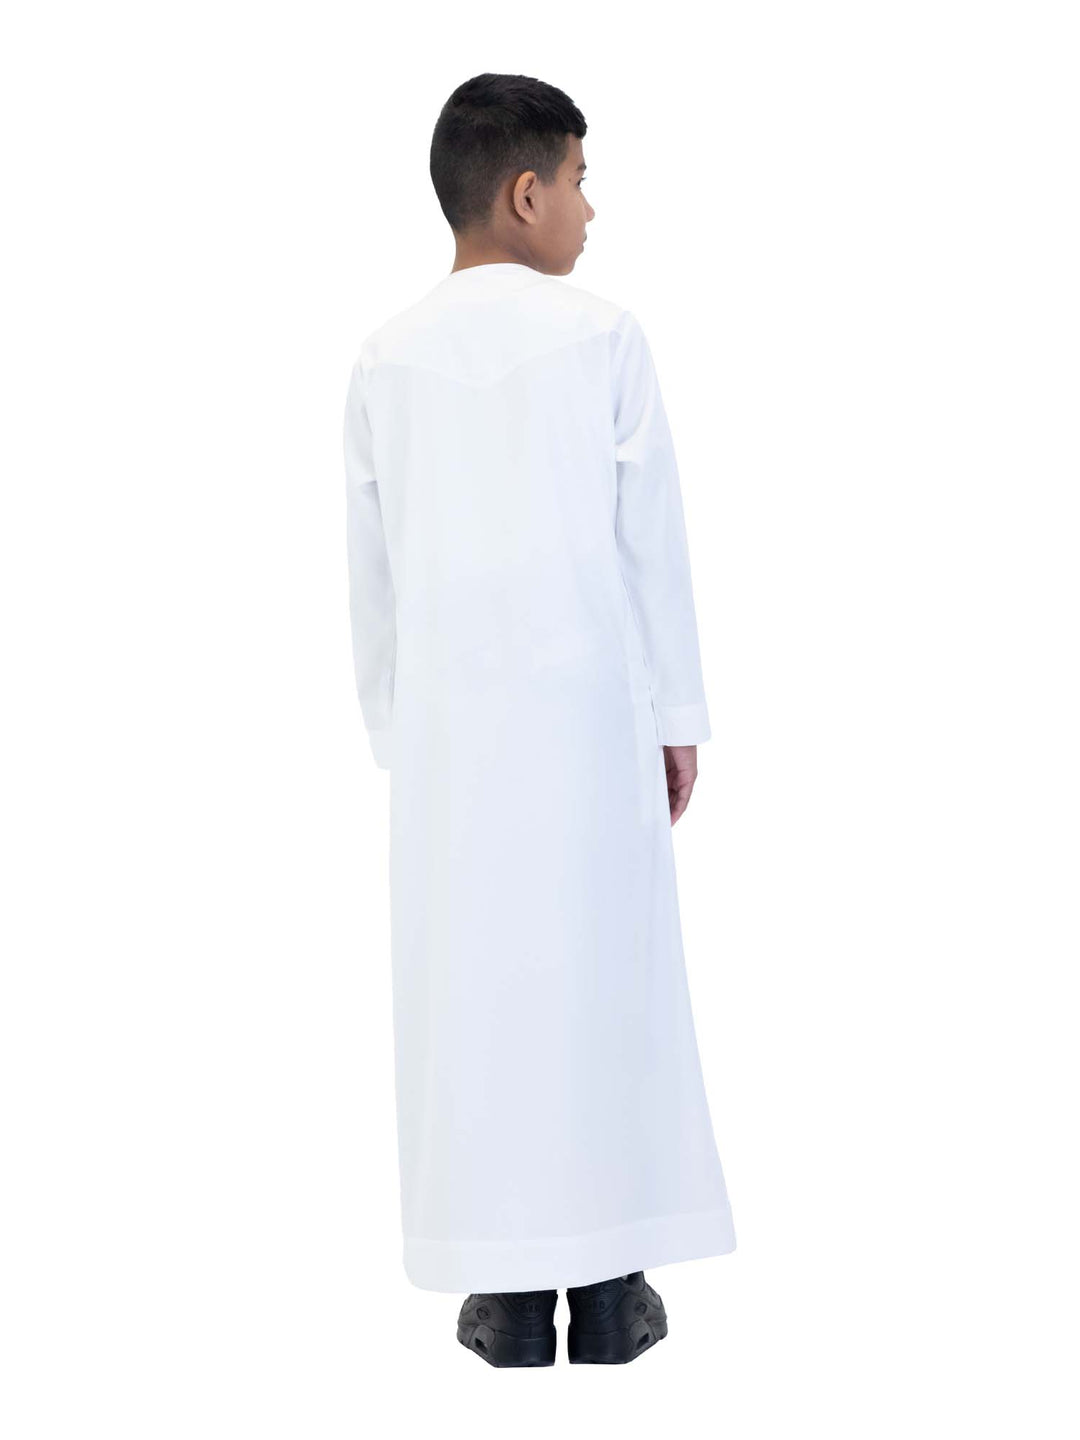 ثوب حريري للأولاد من الانطباعات الإسلامية مع سحاب - كم كامل